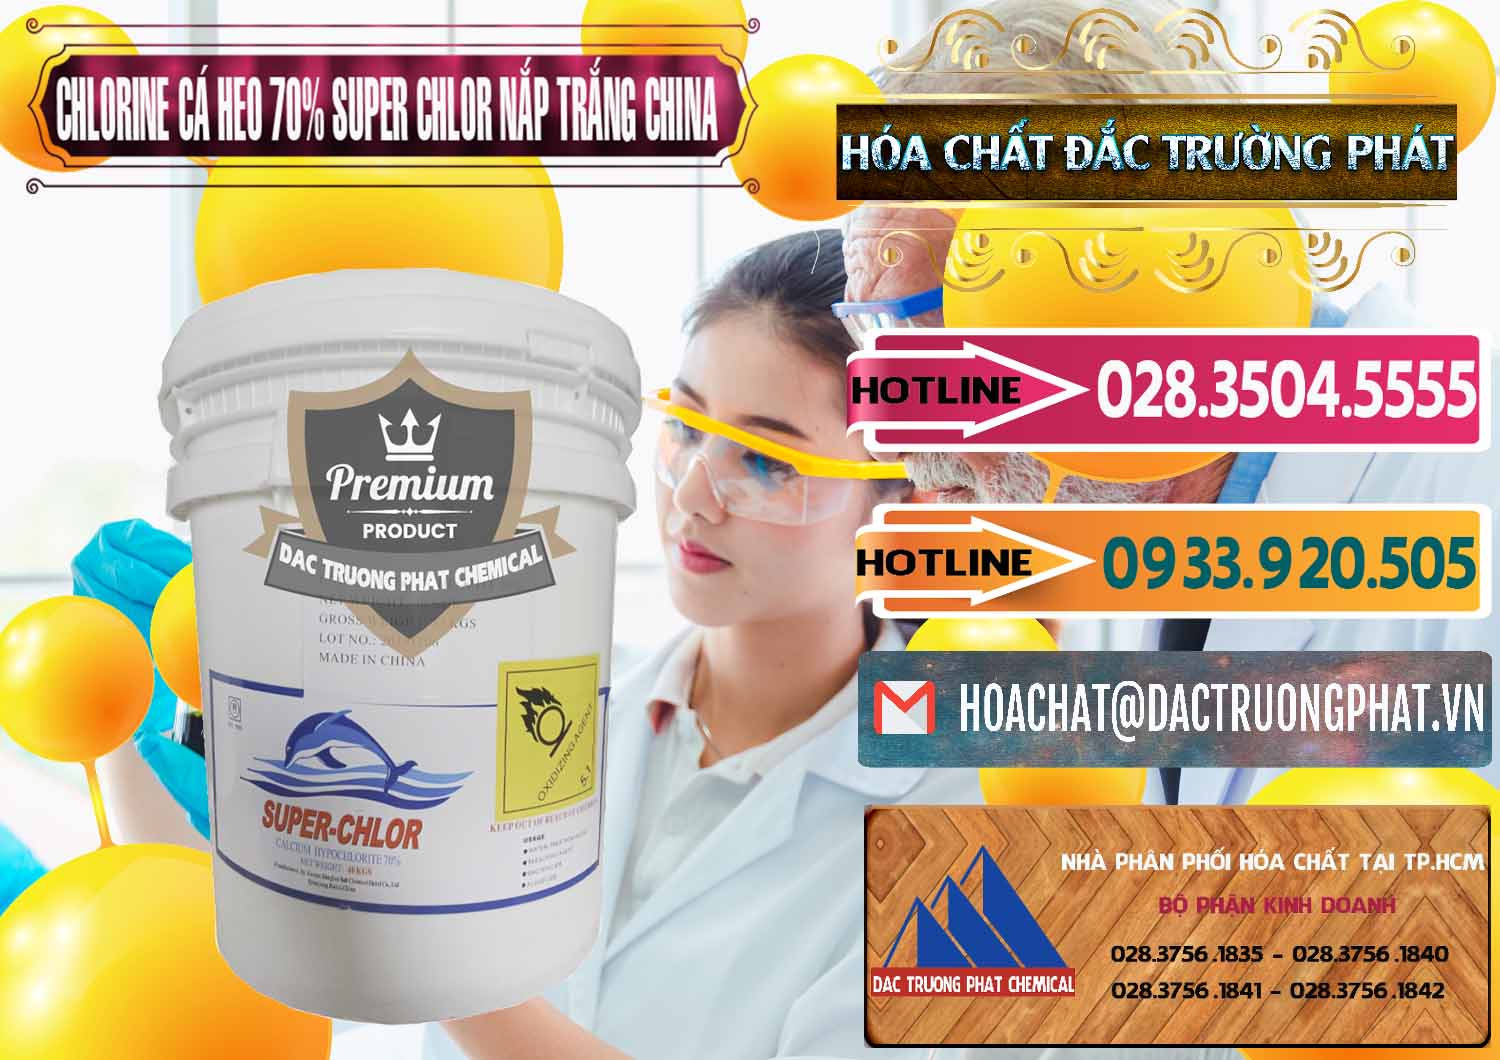 Nơi bán và cung cấp Clorin - Chlorine Cá Heo 70% Super Chlor Nắp Trắng Trung Quốc China - 0240 - Đơn vị chuyên kinh doanh và phân phối hóa chất tại TP.HCM - dactruongphat.vn